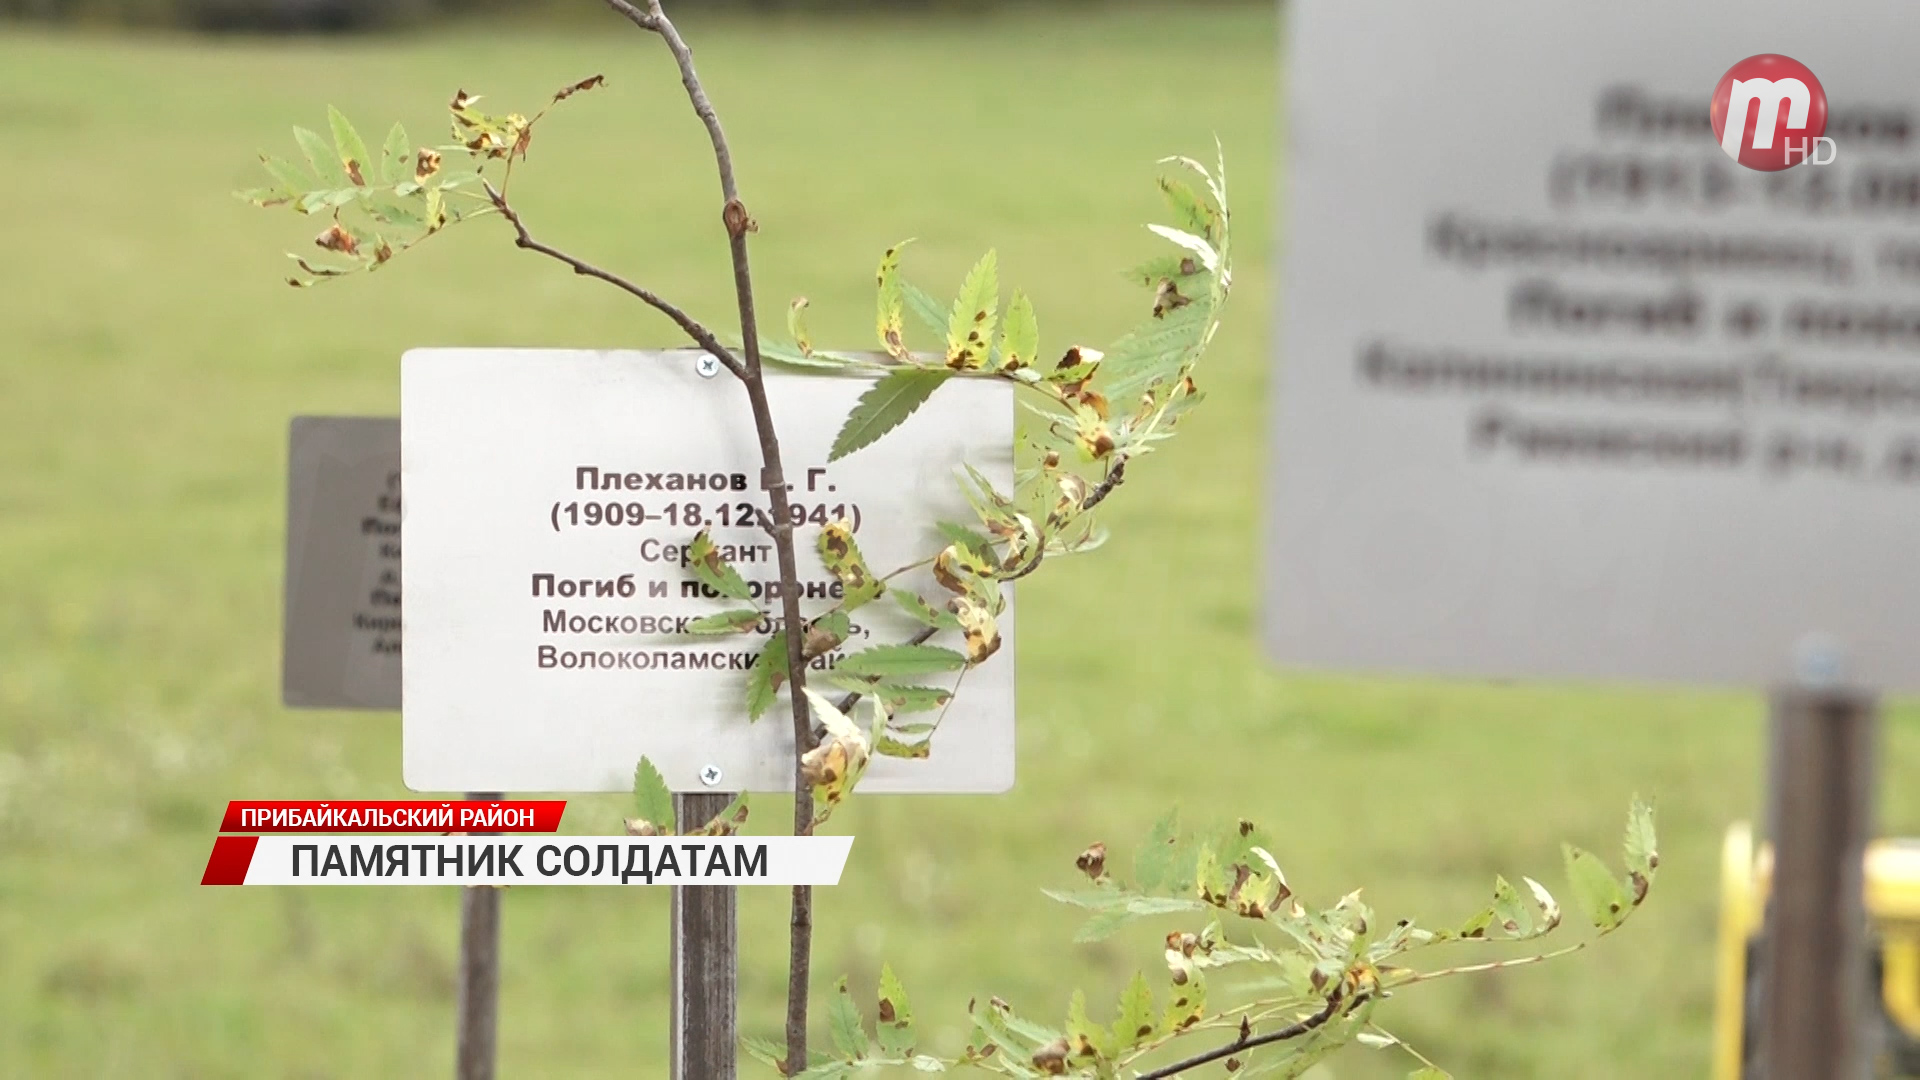 В Прибайкальском районе установили памятник героям на народные средства